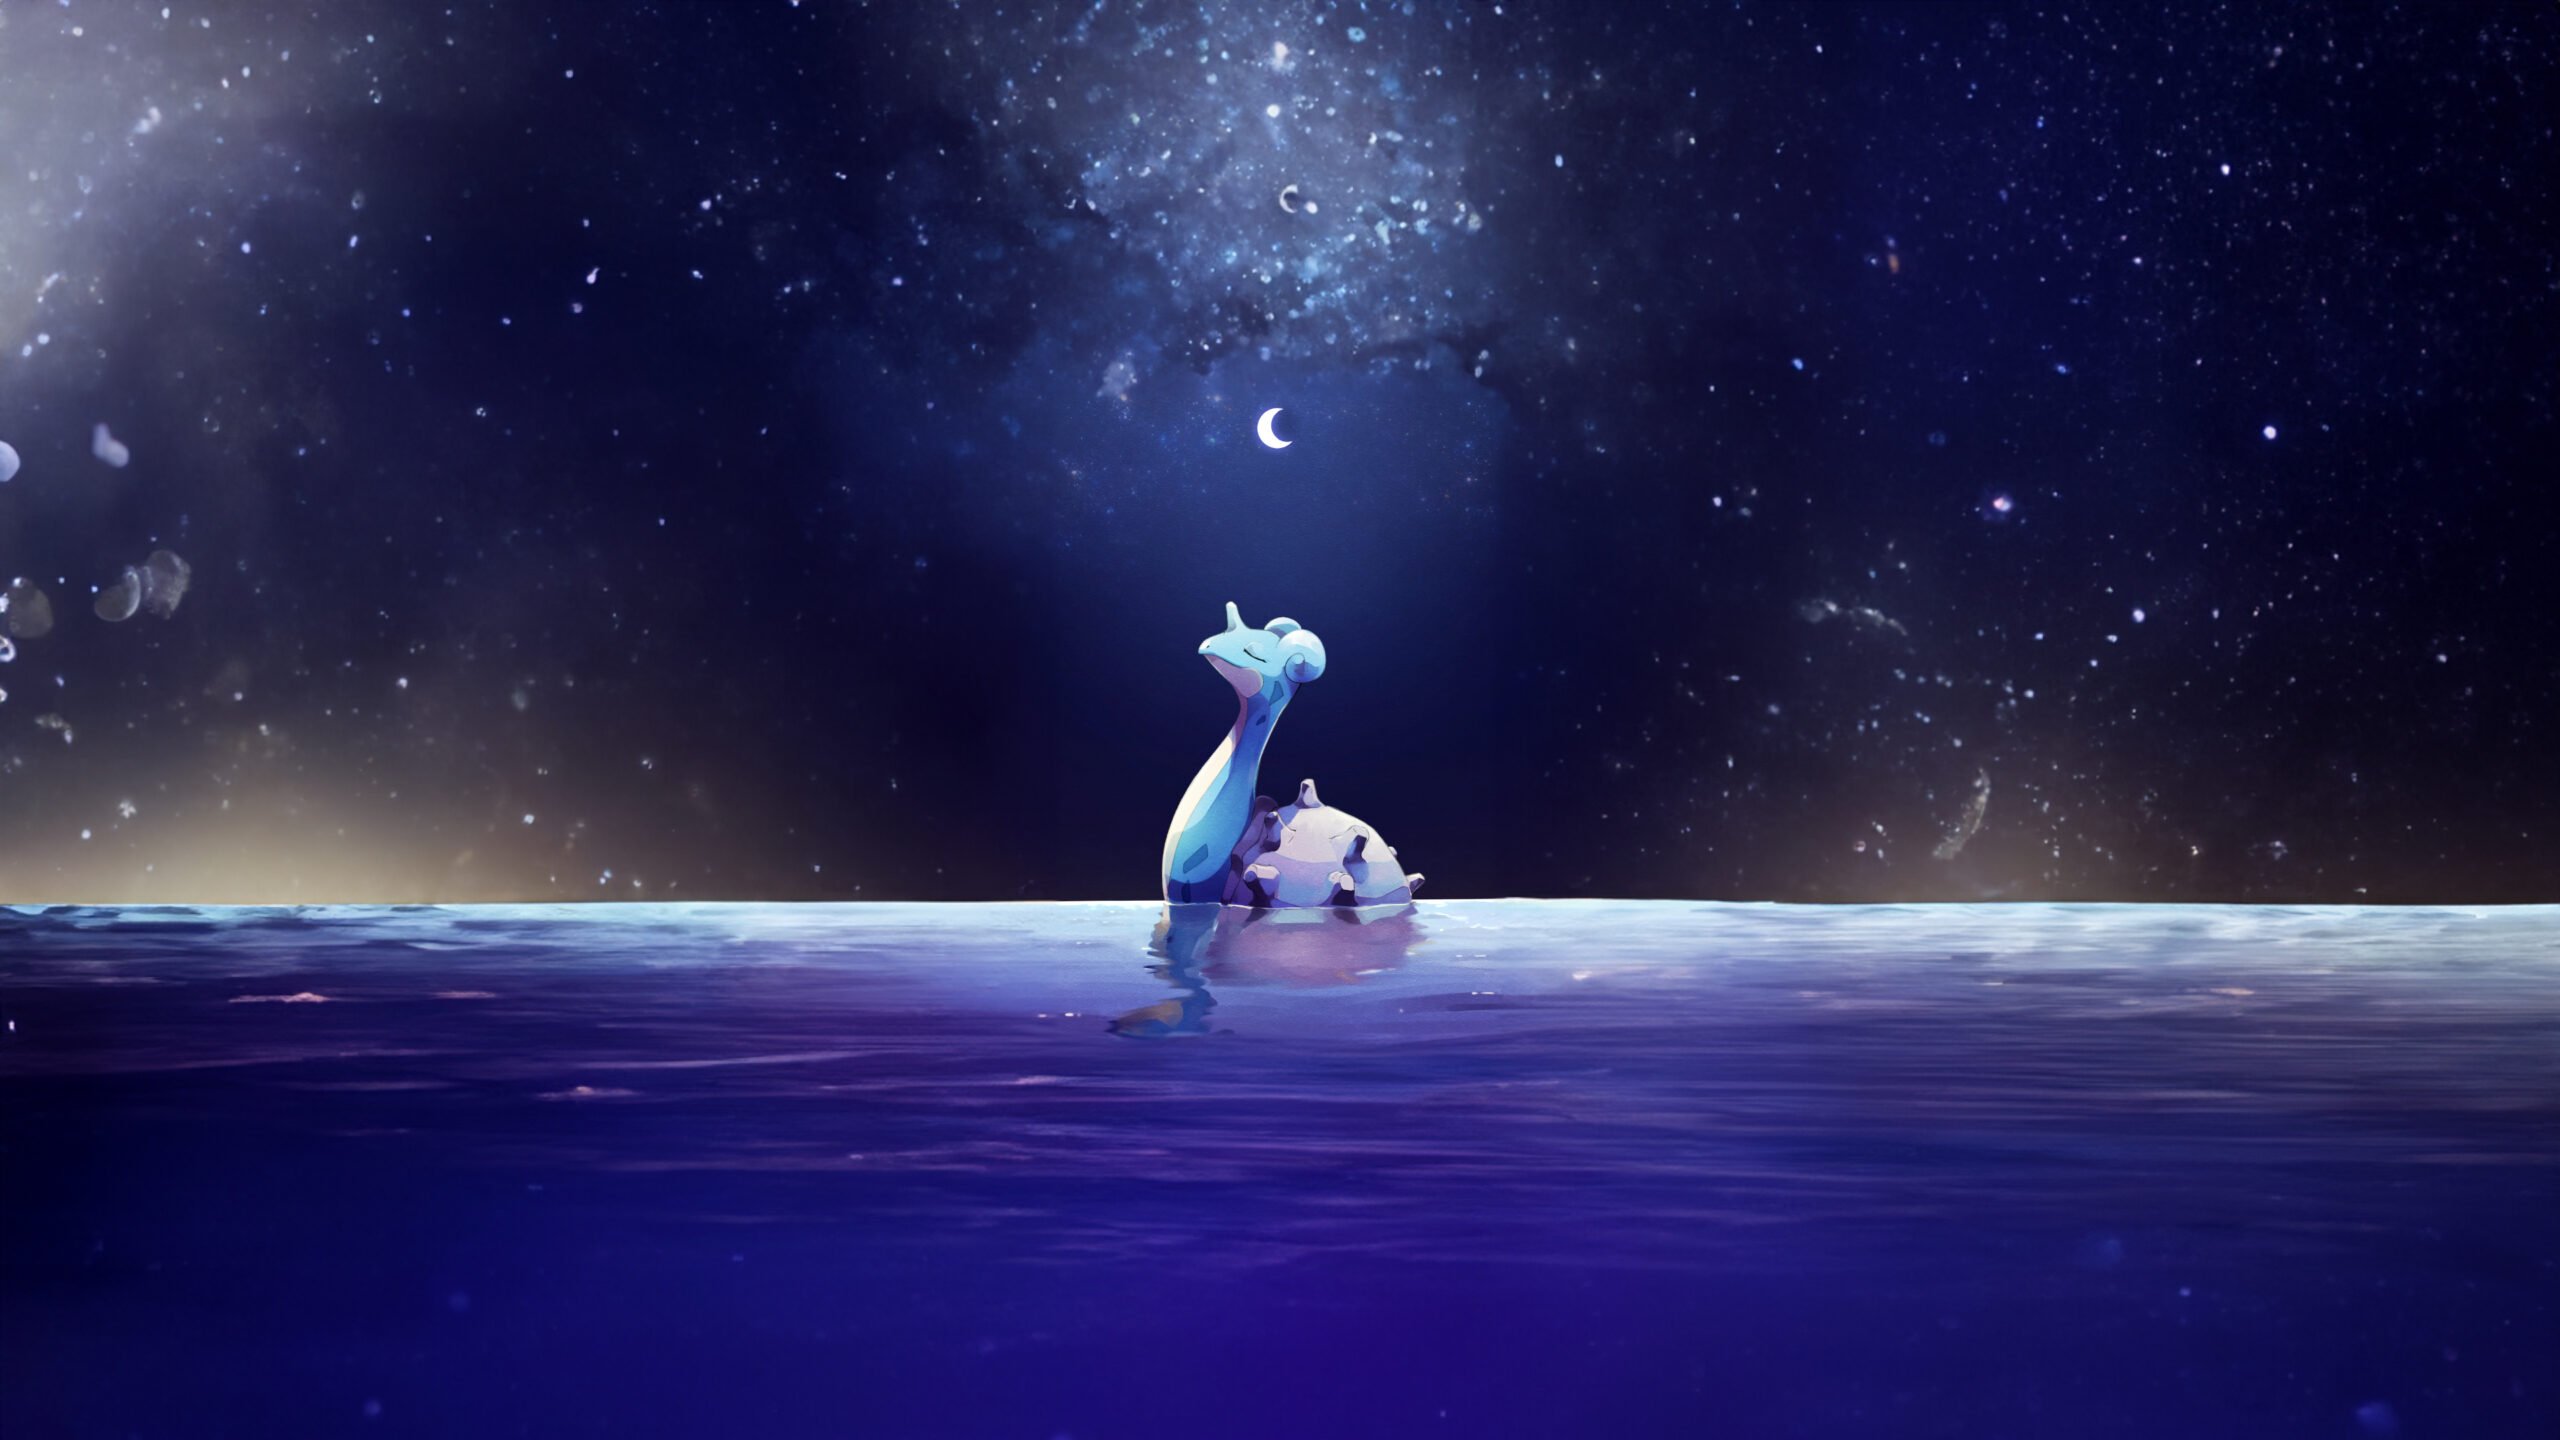 Lokhlass la nuit – fond d’écran Pokémon en 4K pour mobile et ordinateur